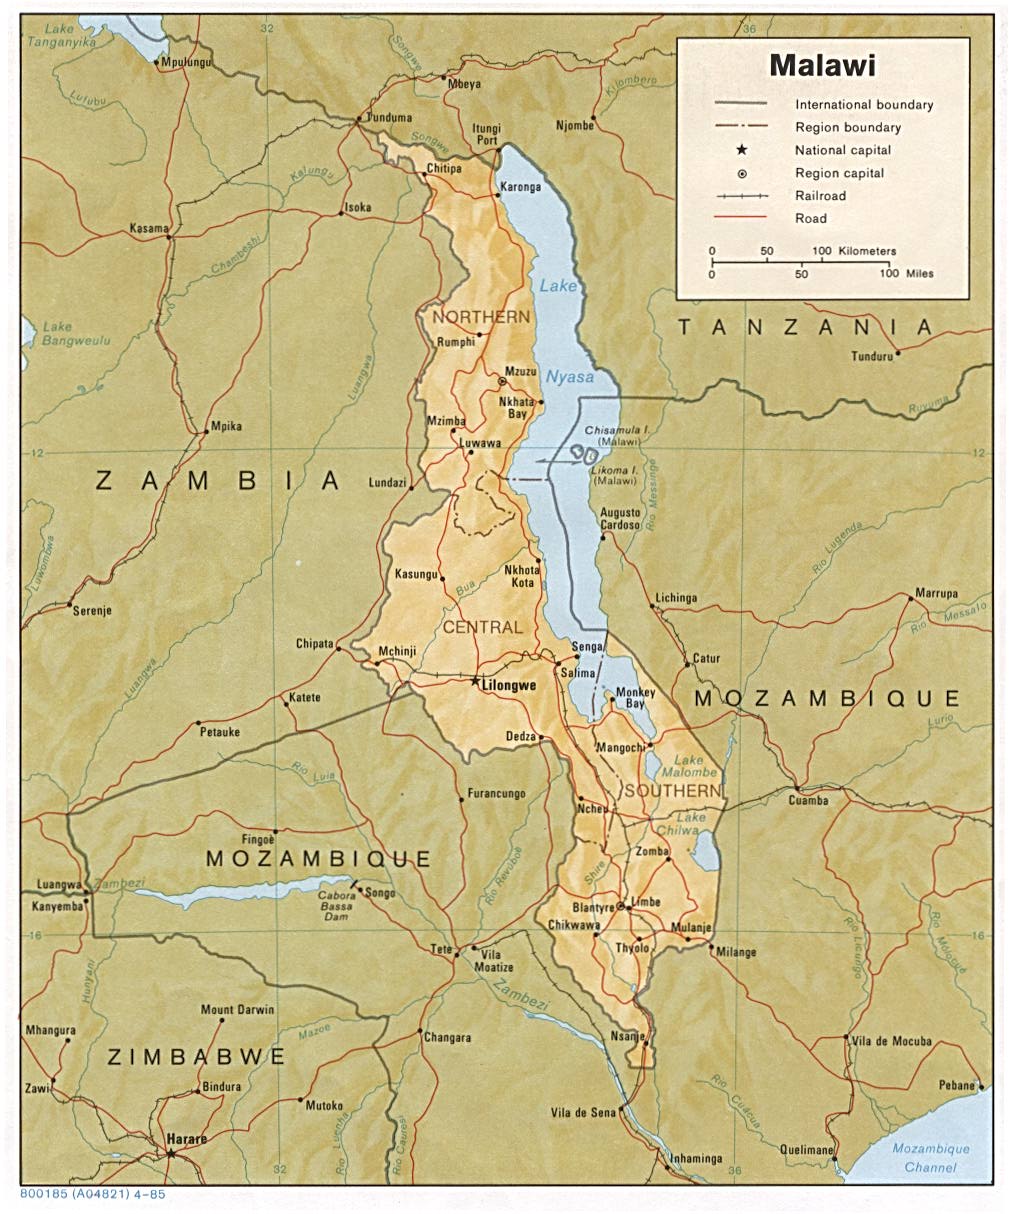 Mapa físico y político de Malaui (1985)